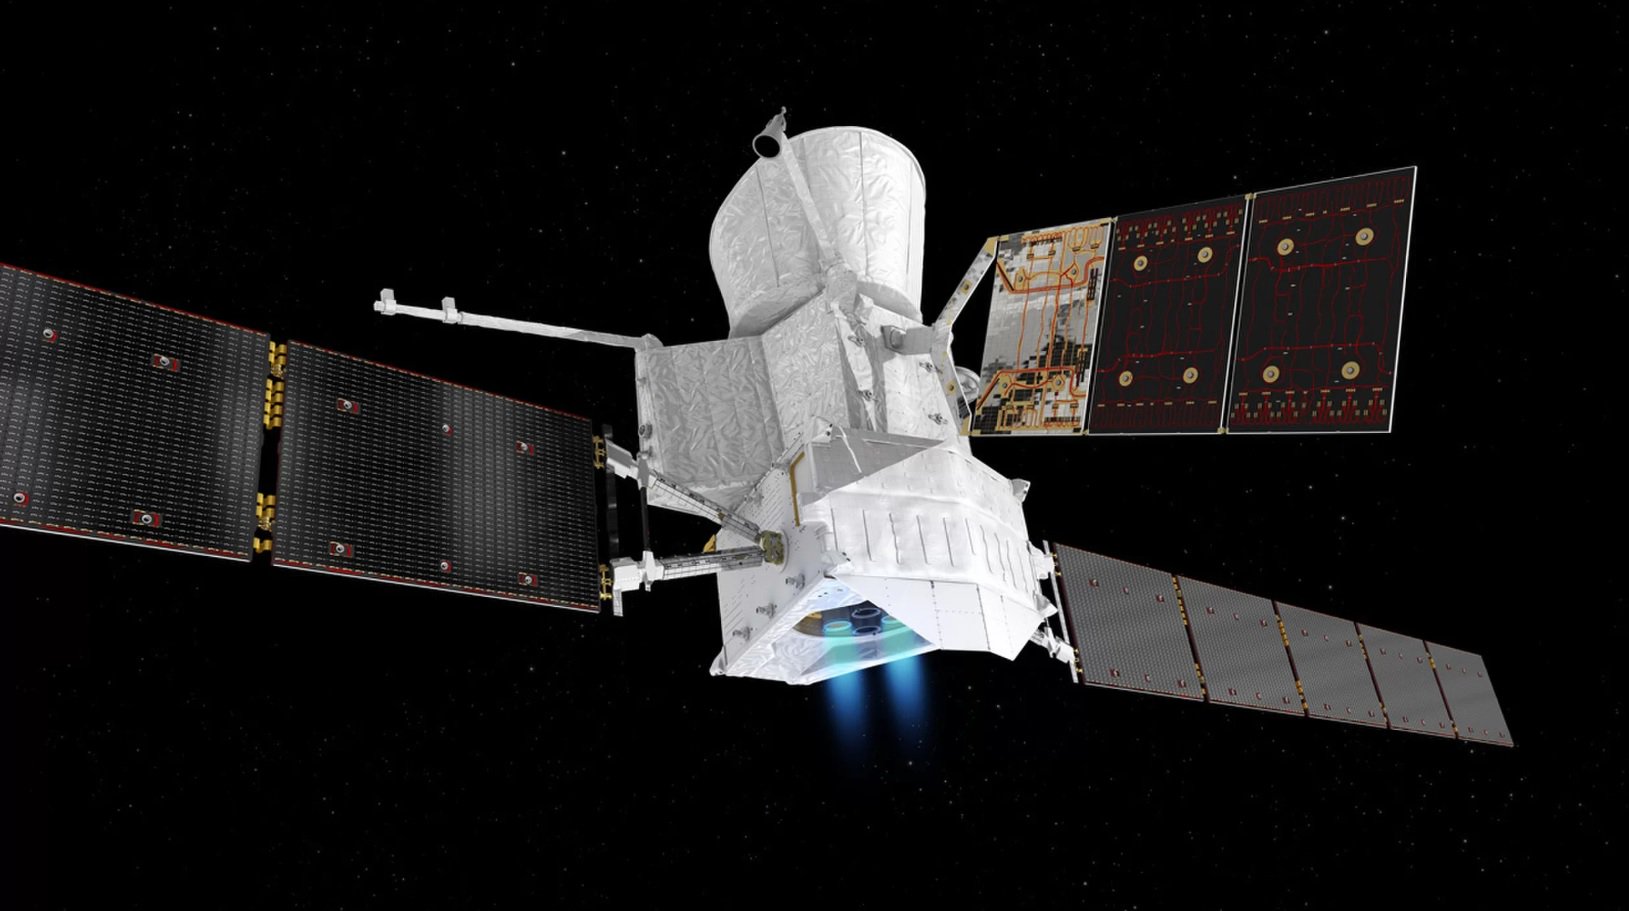 Motori ionici missione BepiColombo hanno superato il primo test nello spazio